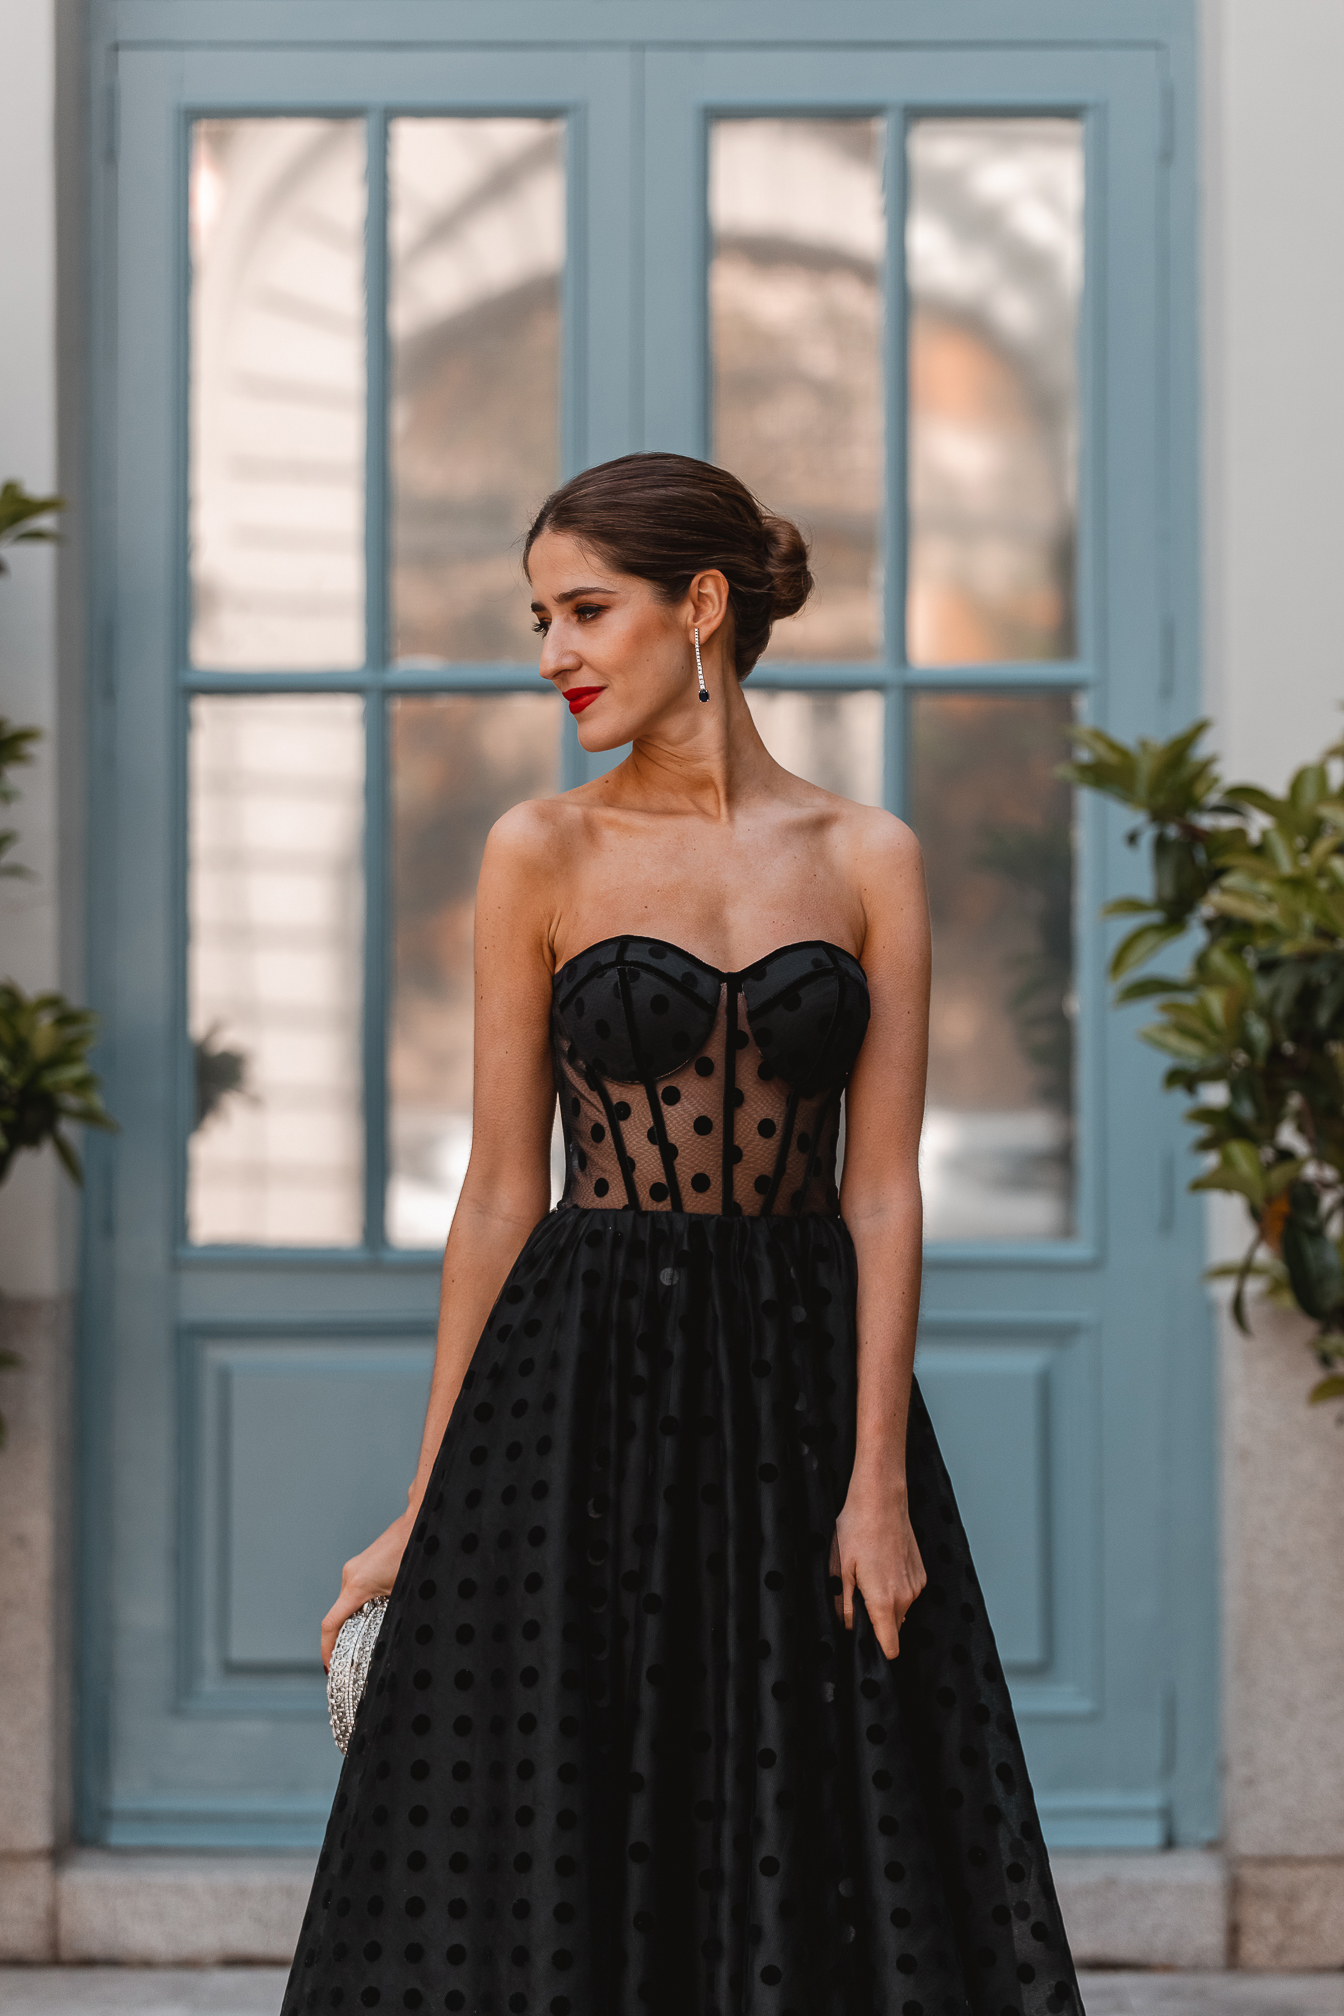 invitada perfecta vestido negro falda tul